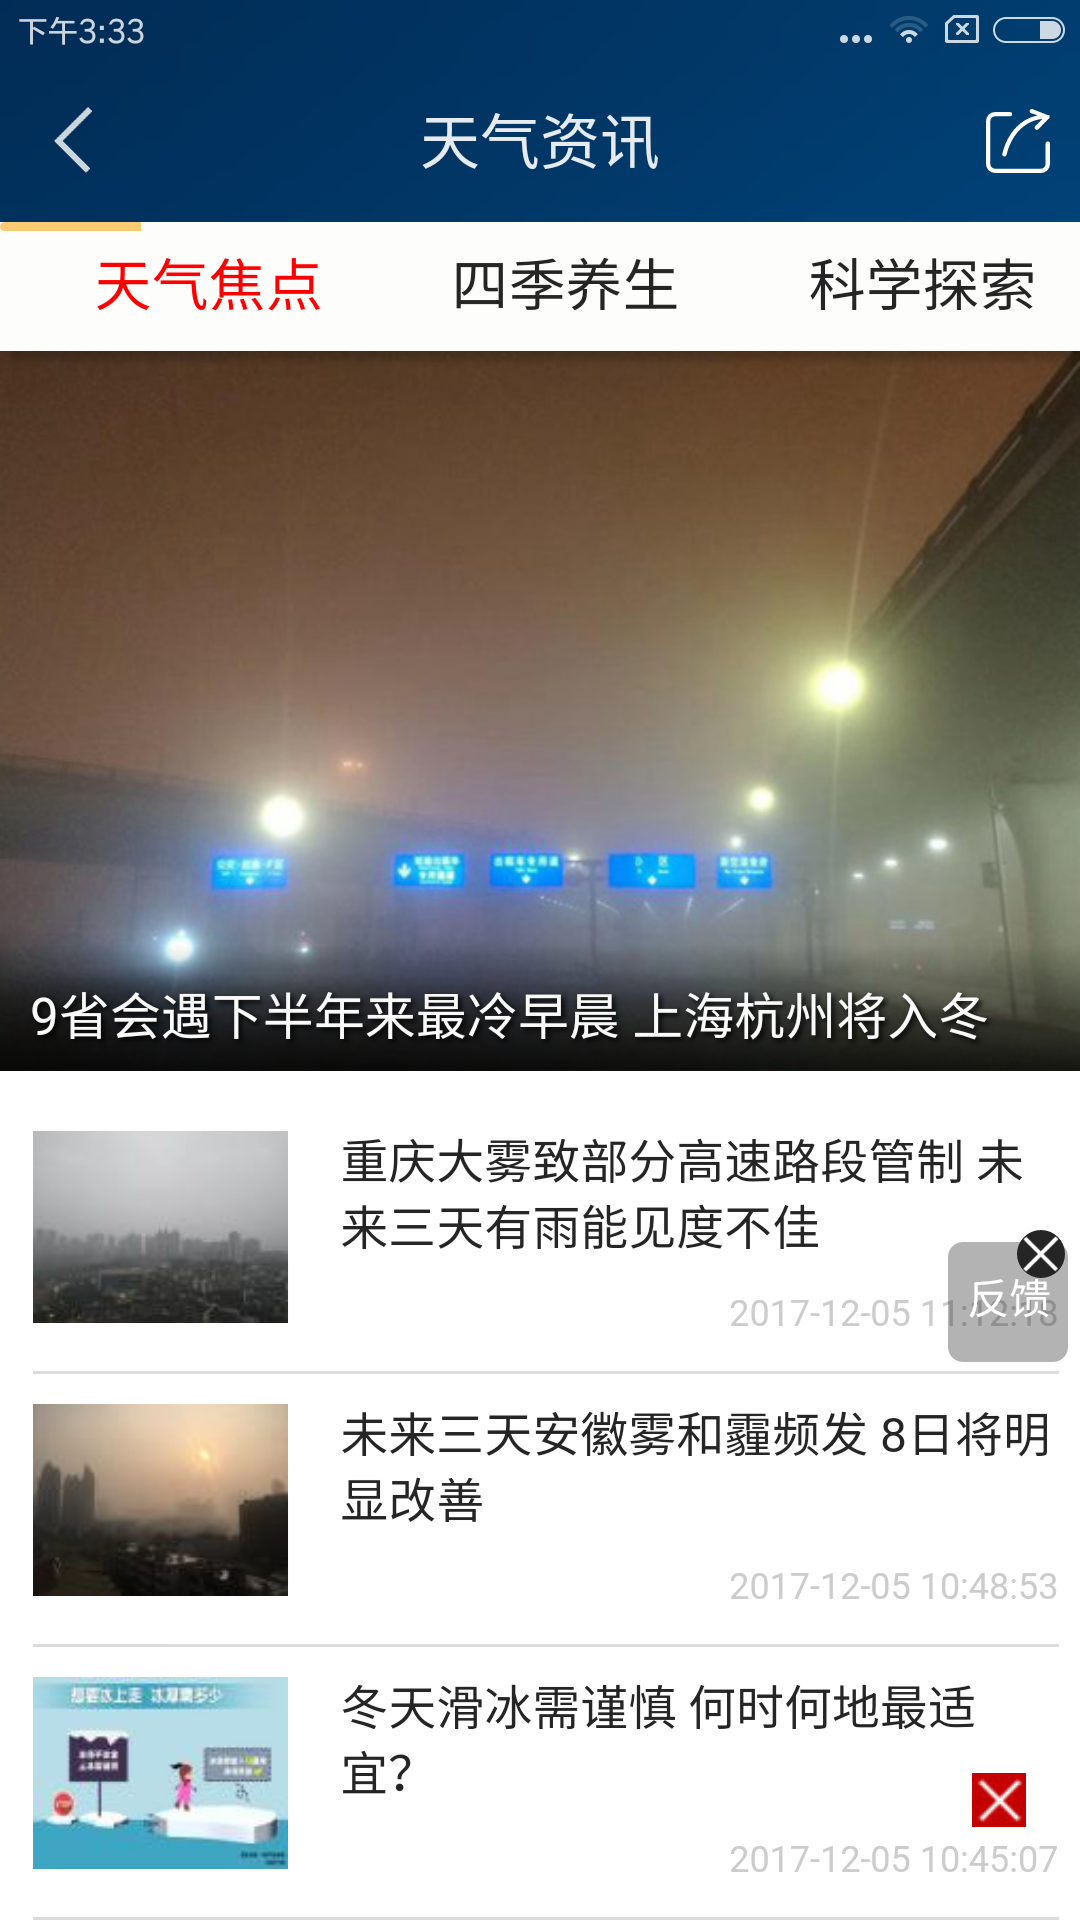 中国天气网 - weather.com.cn网站数据分析报告 - 网站排行榜